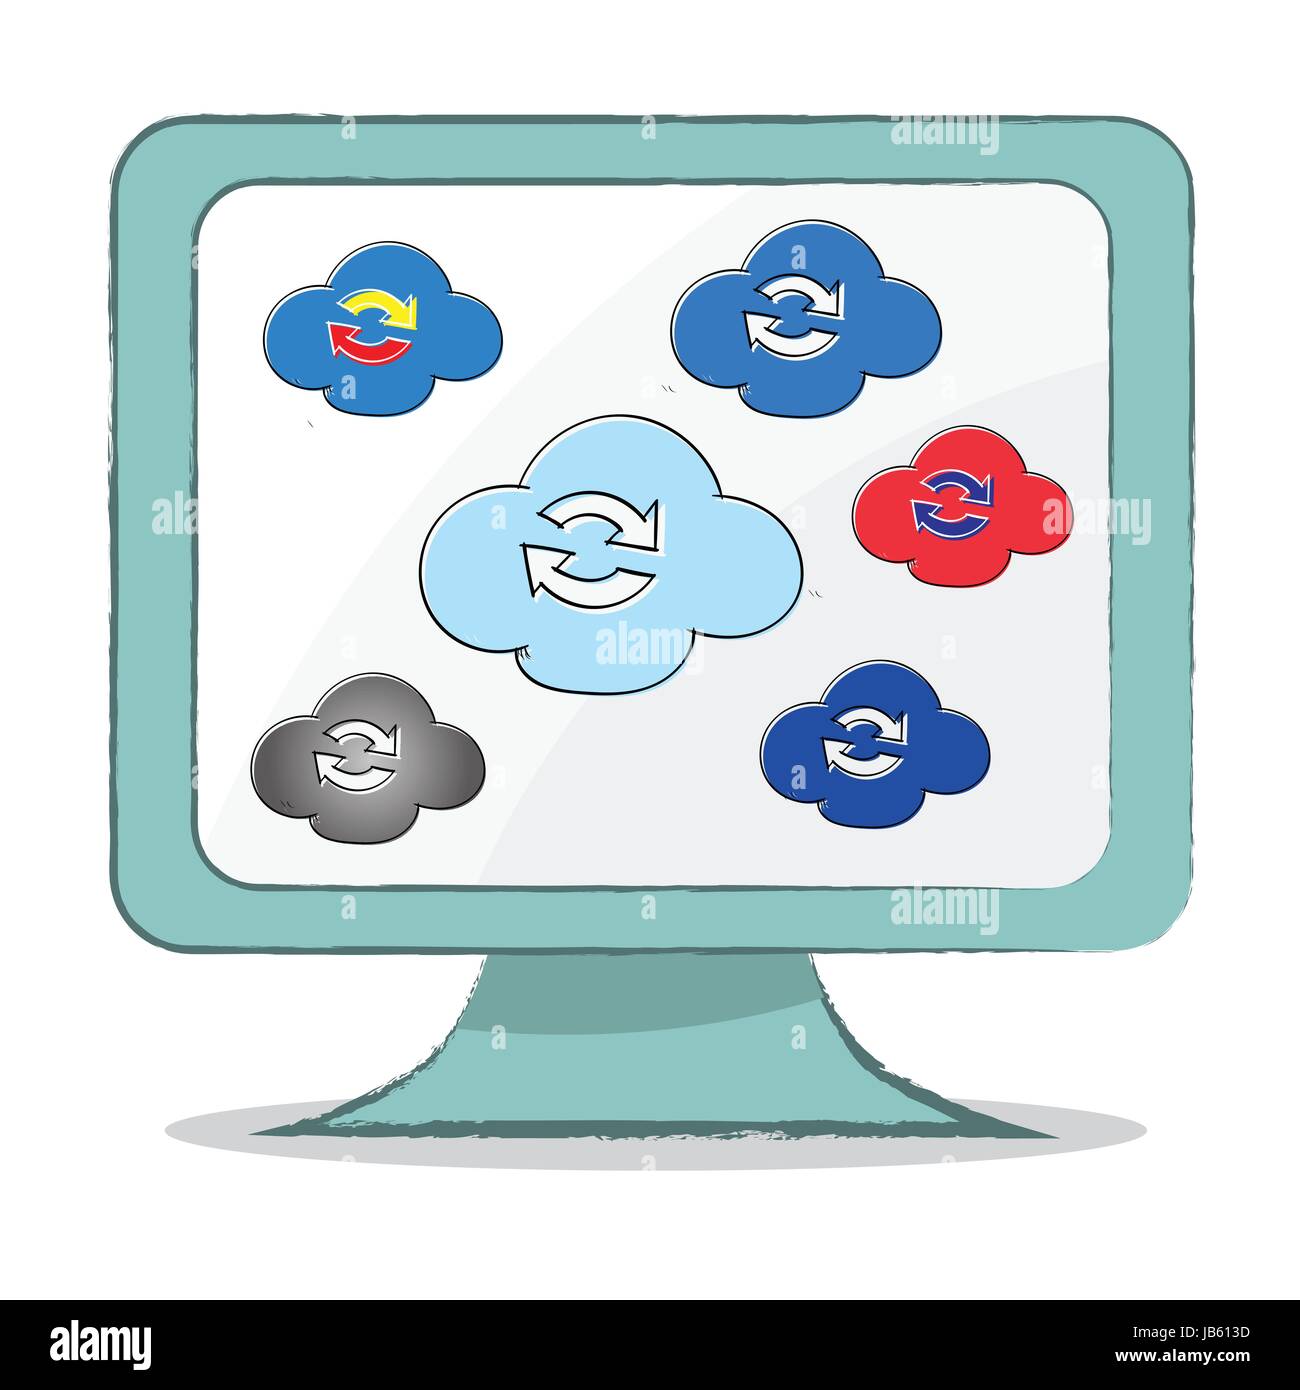 L'icône de synchronisation cloud sur le moniteur de l'ordinateur, la main se noient, simple style design - vector illustration. Illustration de Vecteur